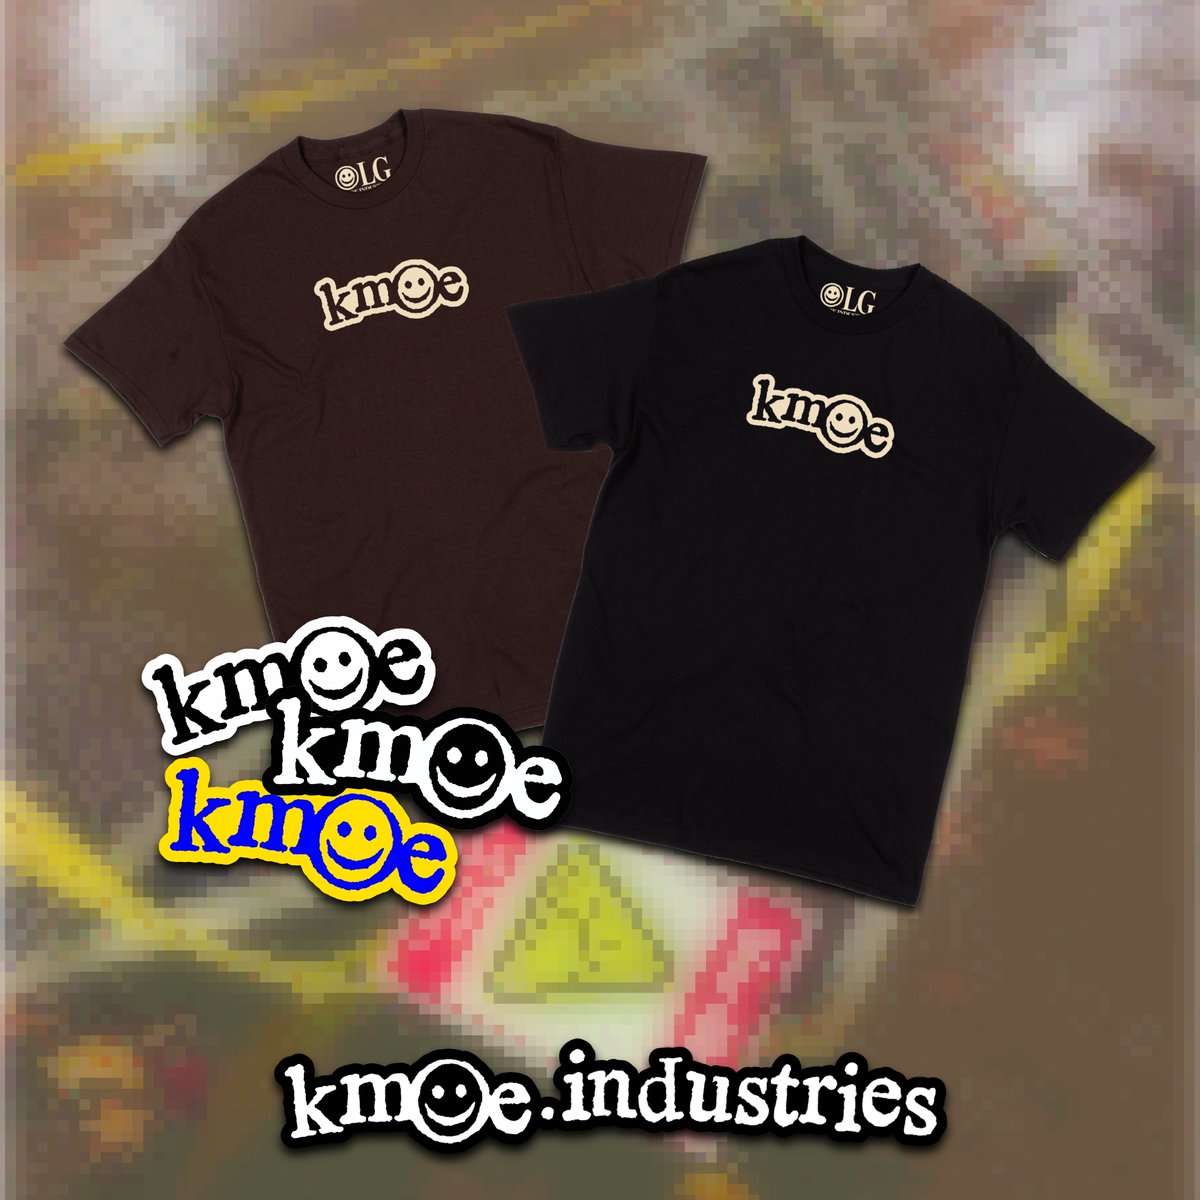 kmoe.industries ☻ drop 1 - live now!